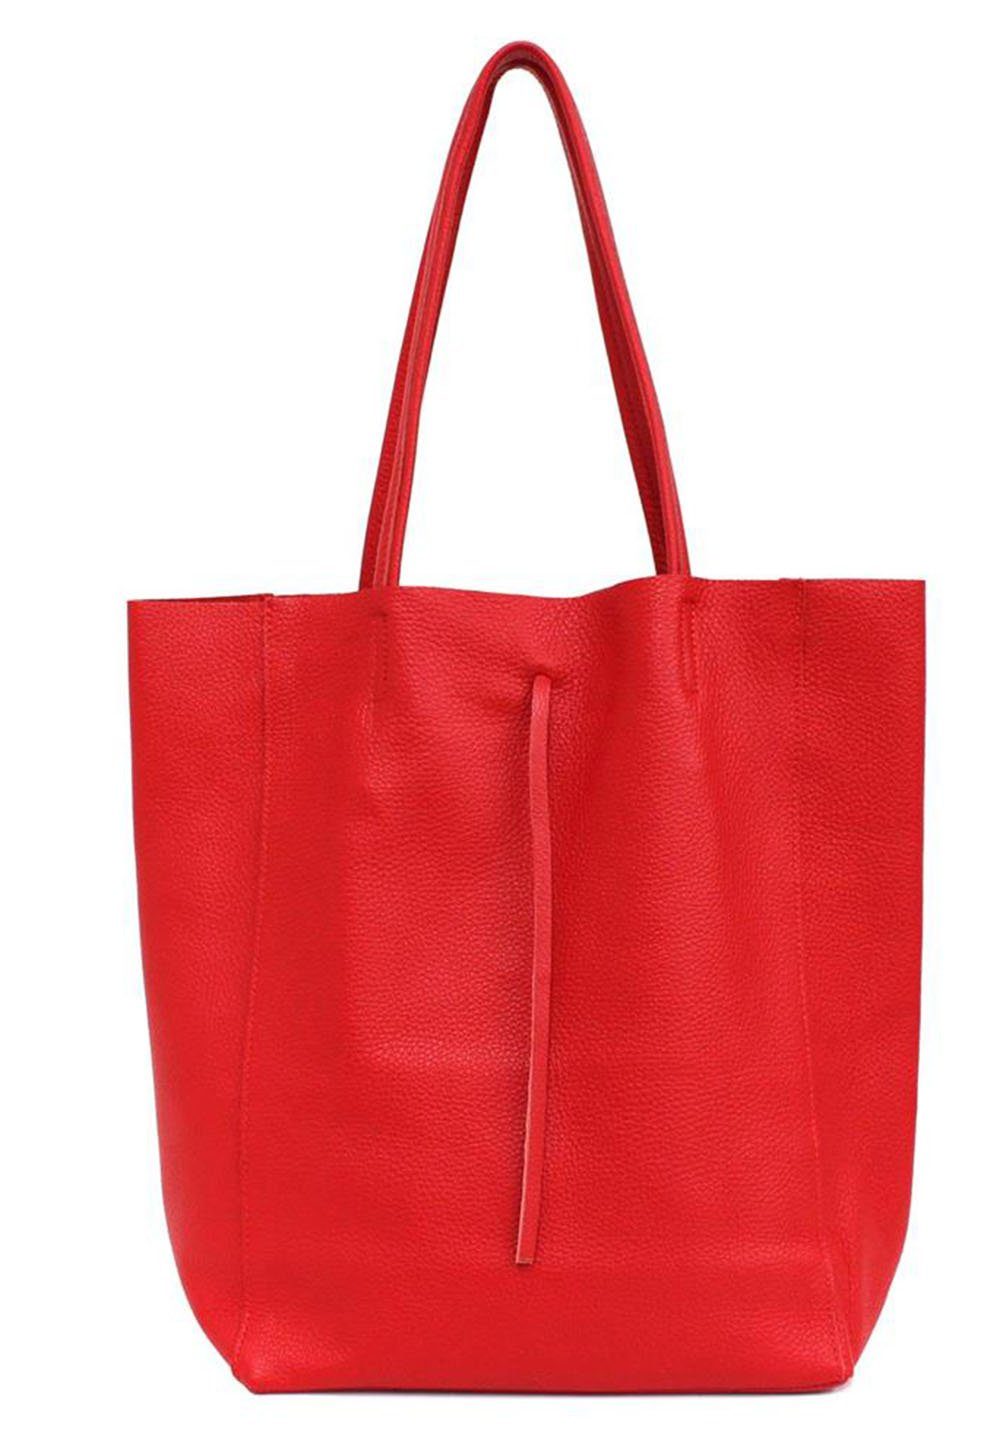 PRINIDOR Shopper Shopper Ledertasche Echtleder, echt Leder, Made in Italy rot